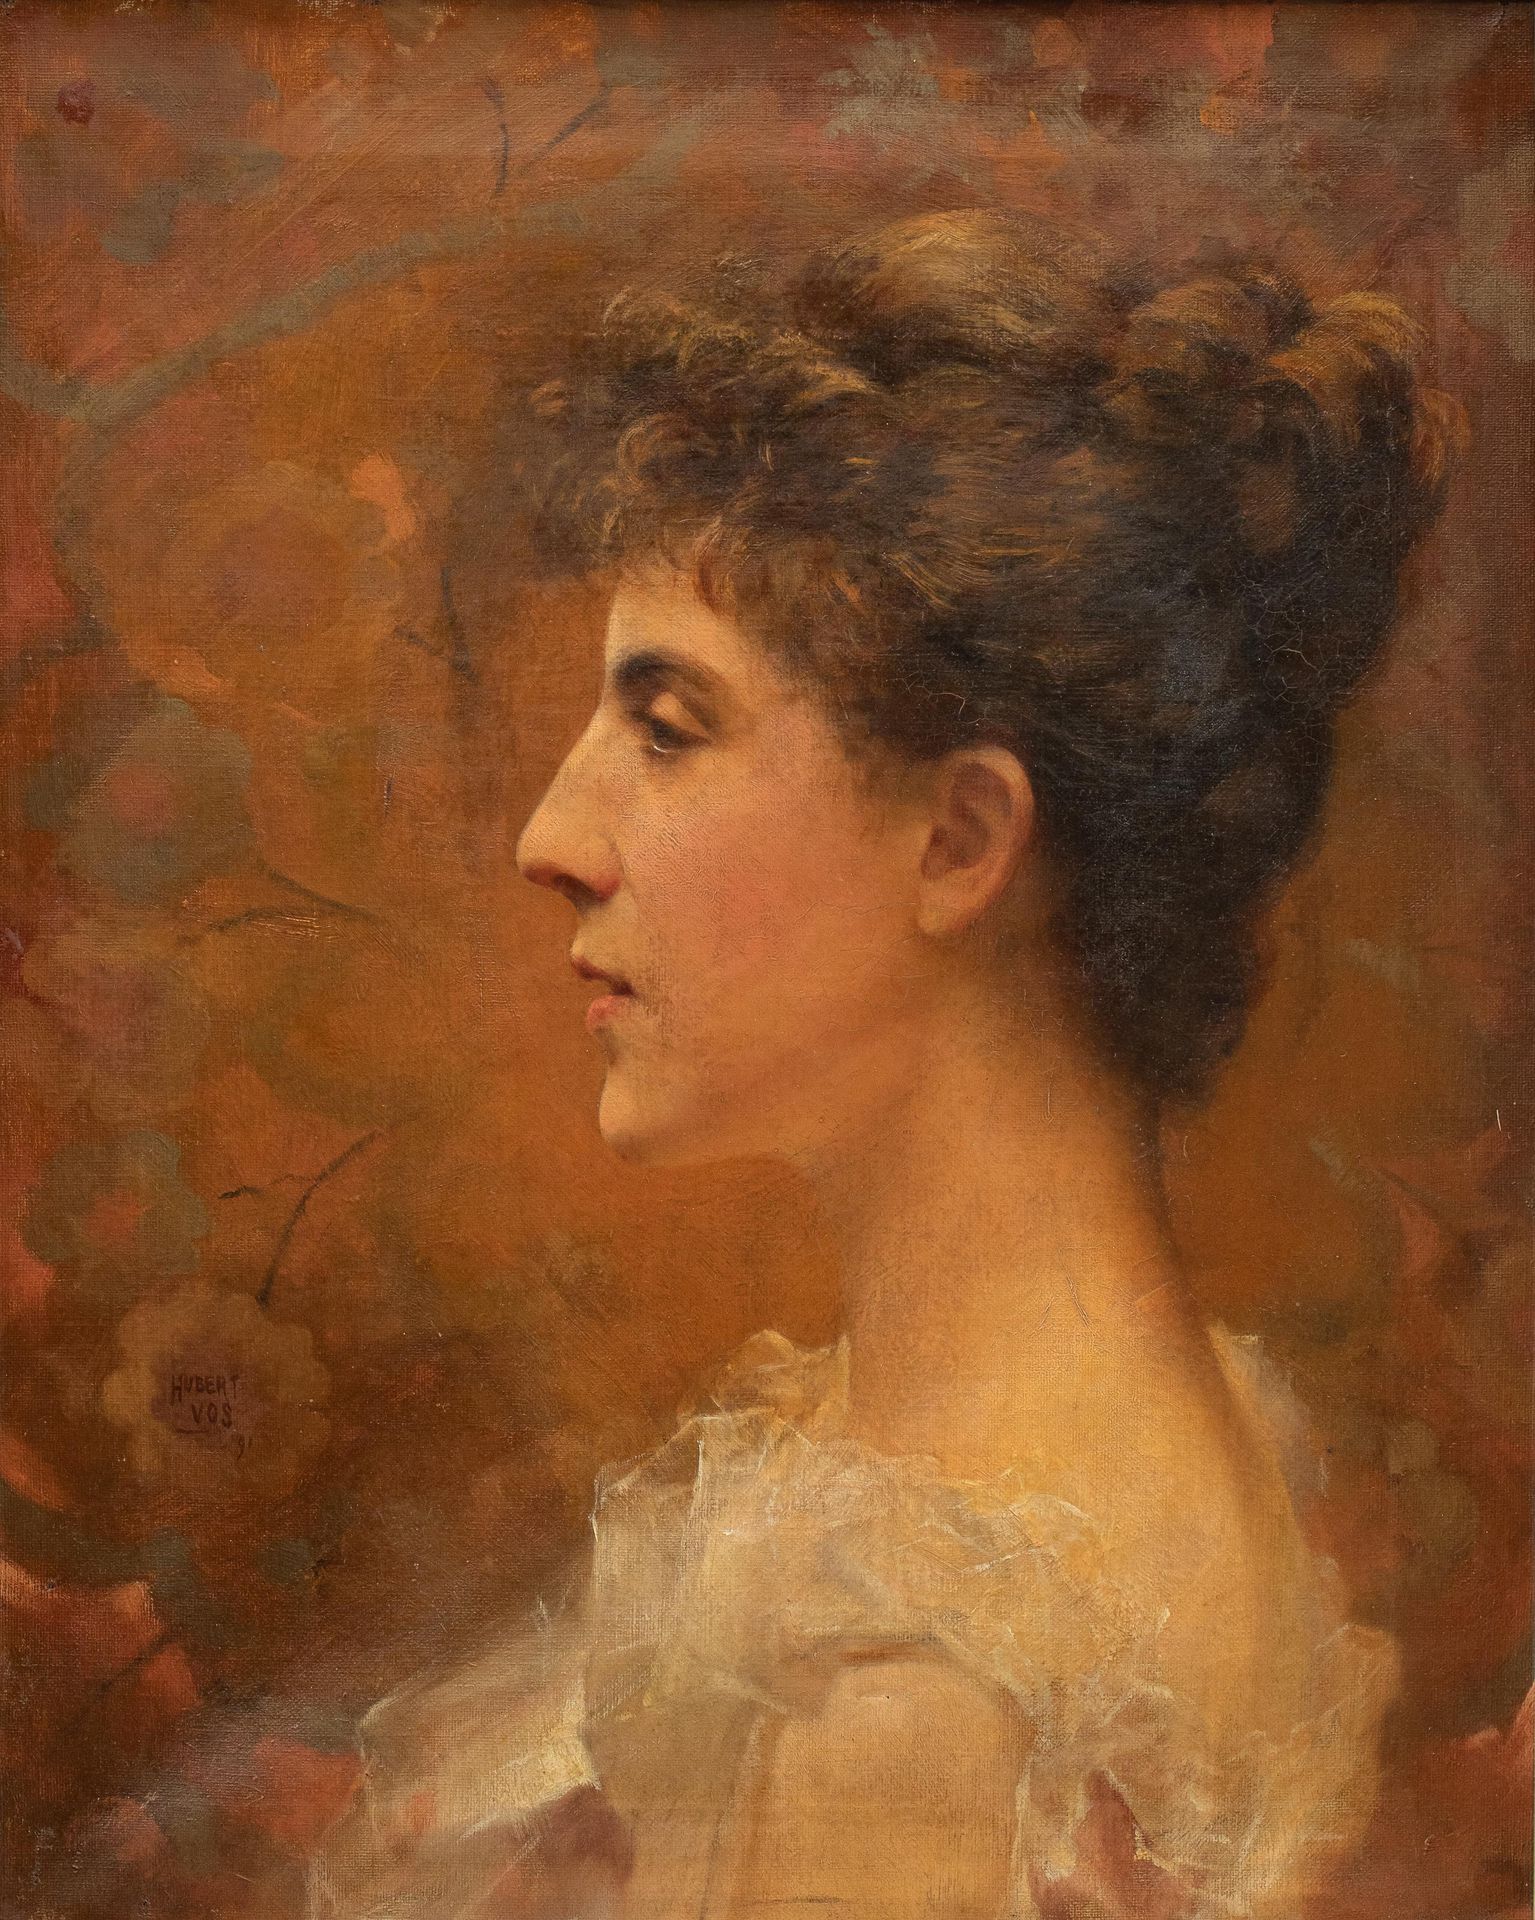 Hubert VOS (1855-1935) 一个女孩的侧面肖像，1891年。

布质。

签名和日期为 "Hubert Vos/ 91"。

51 x 41厘&hellip;